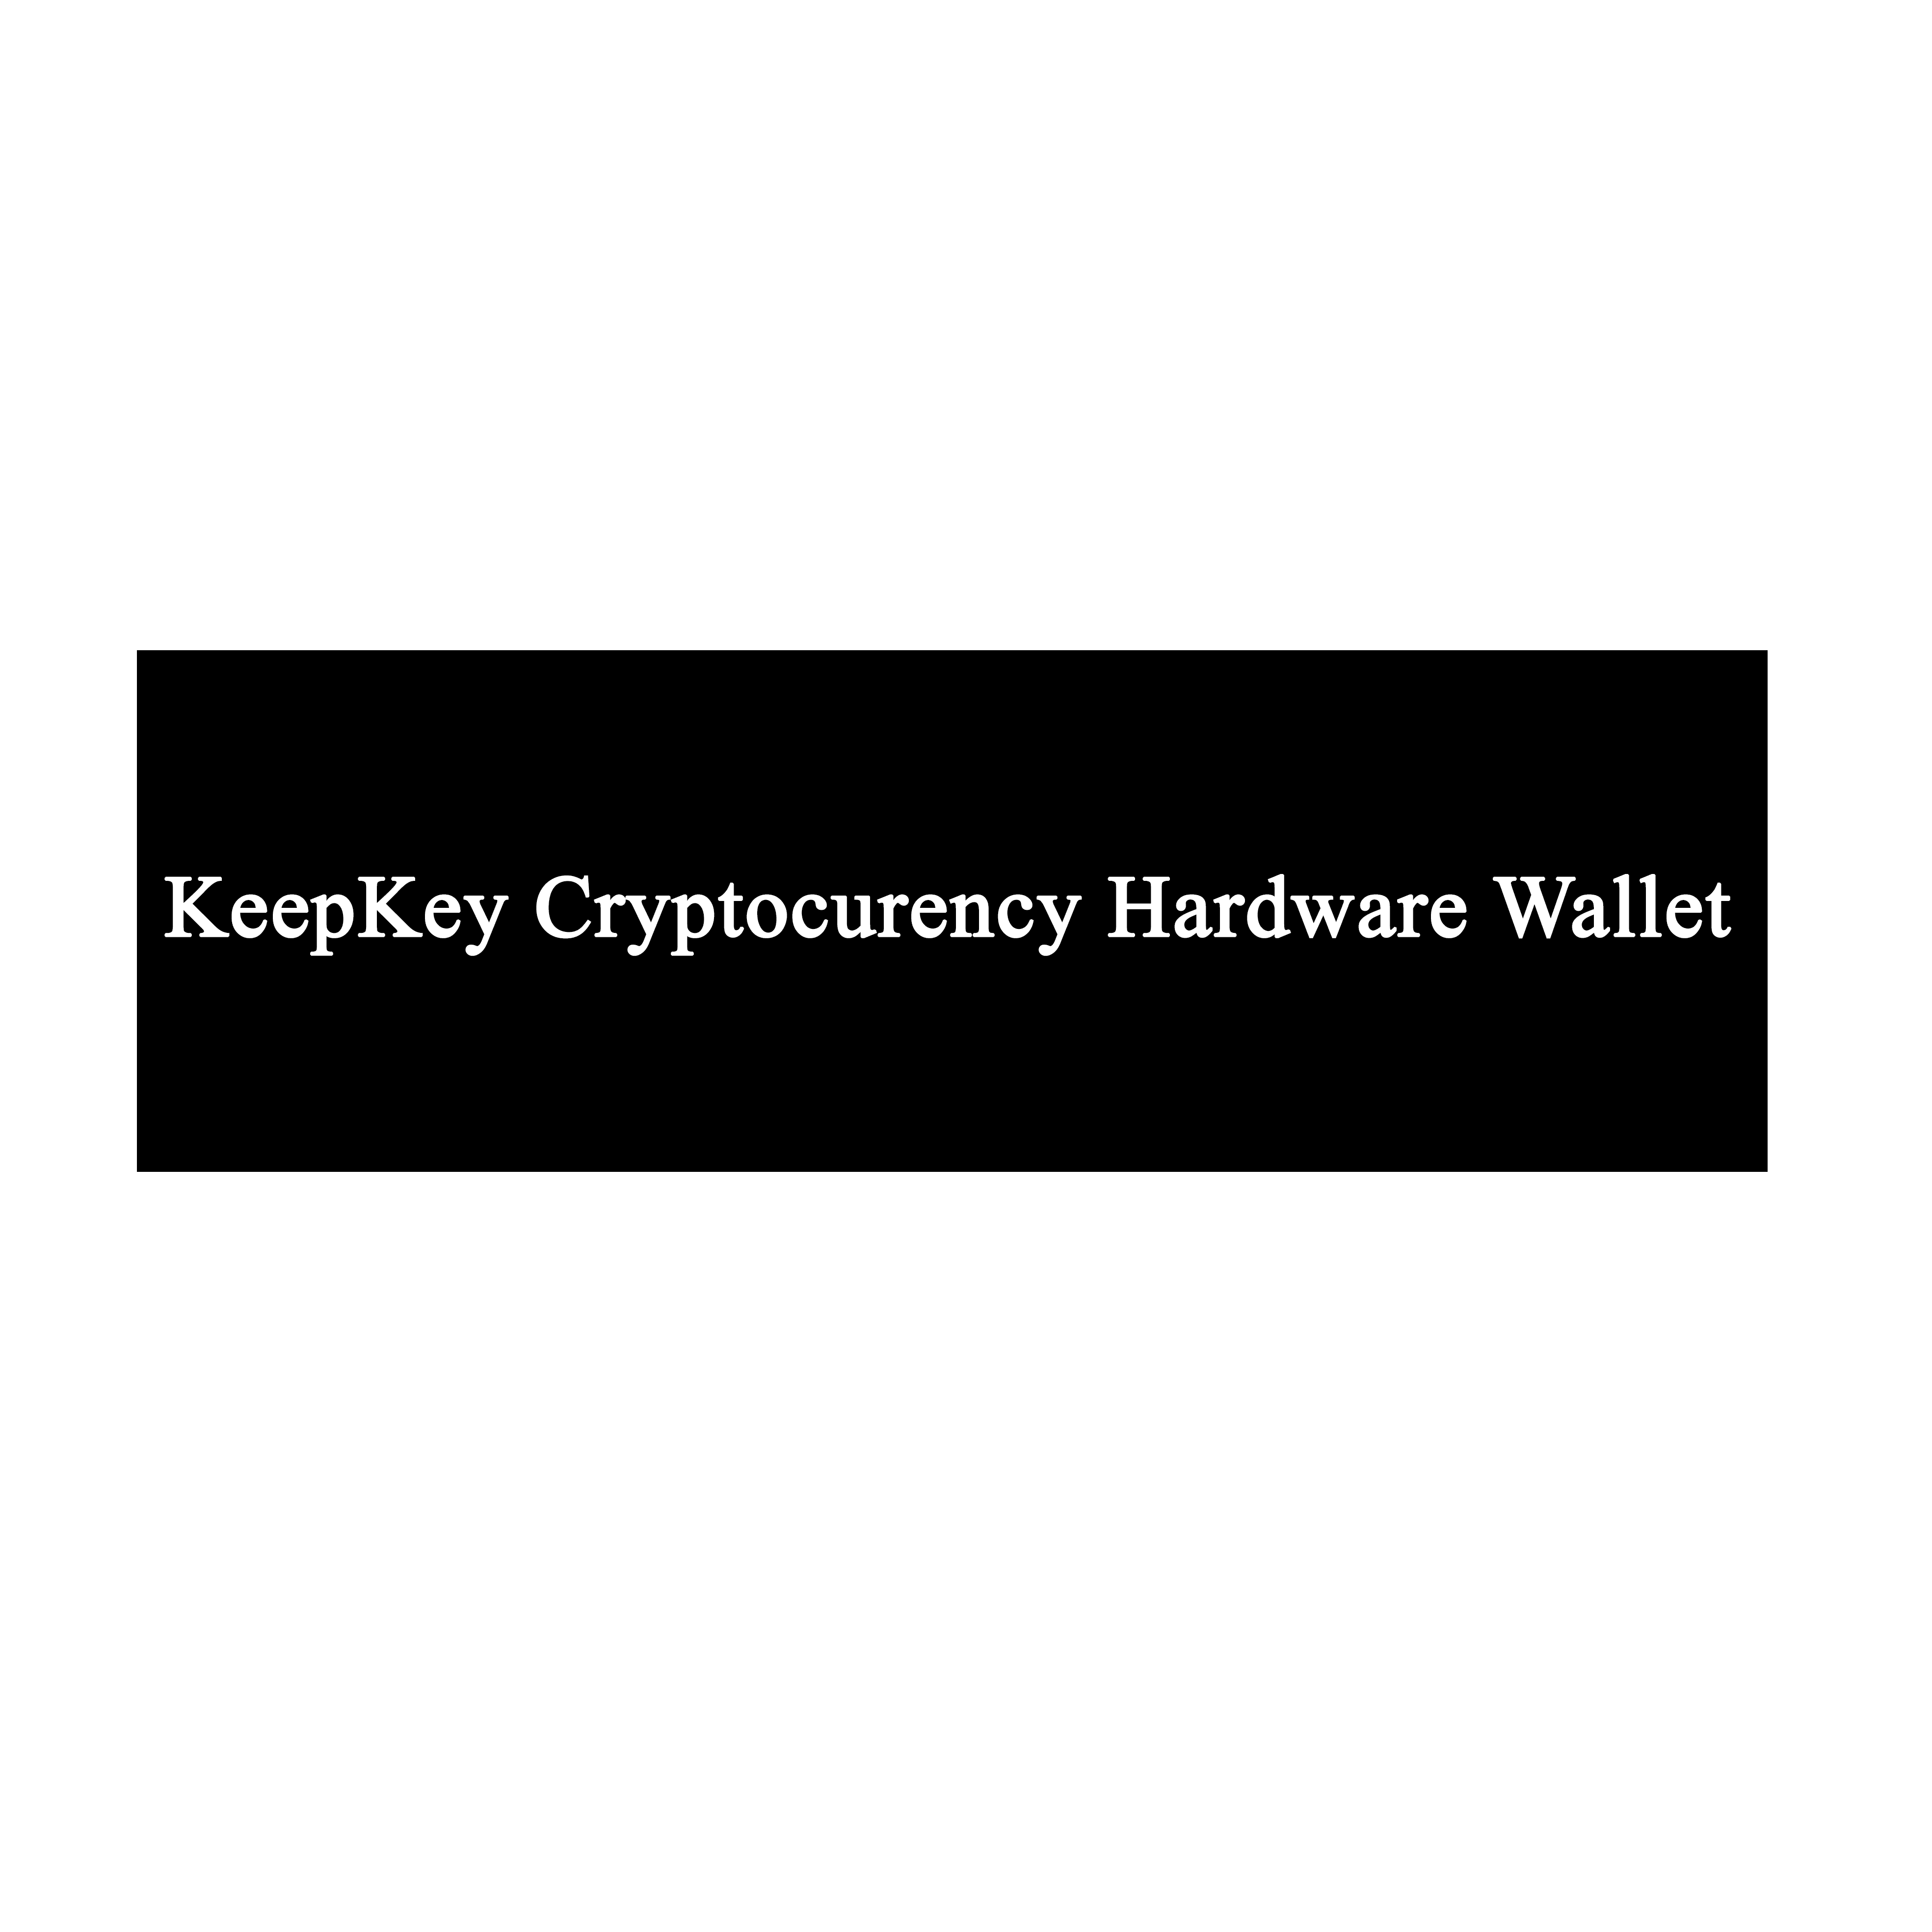 کیف پول کیپ کی (Keepkey Wallet) راهنمای نصب، روش استفاده، چگونه، ارز دیجیتال، Guide، کریپتو کارنسی، کریپتوکارنسی، کریپتوکرنسی